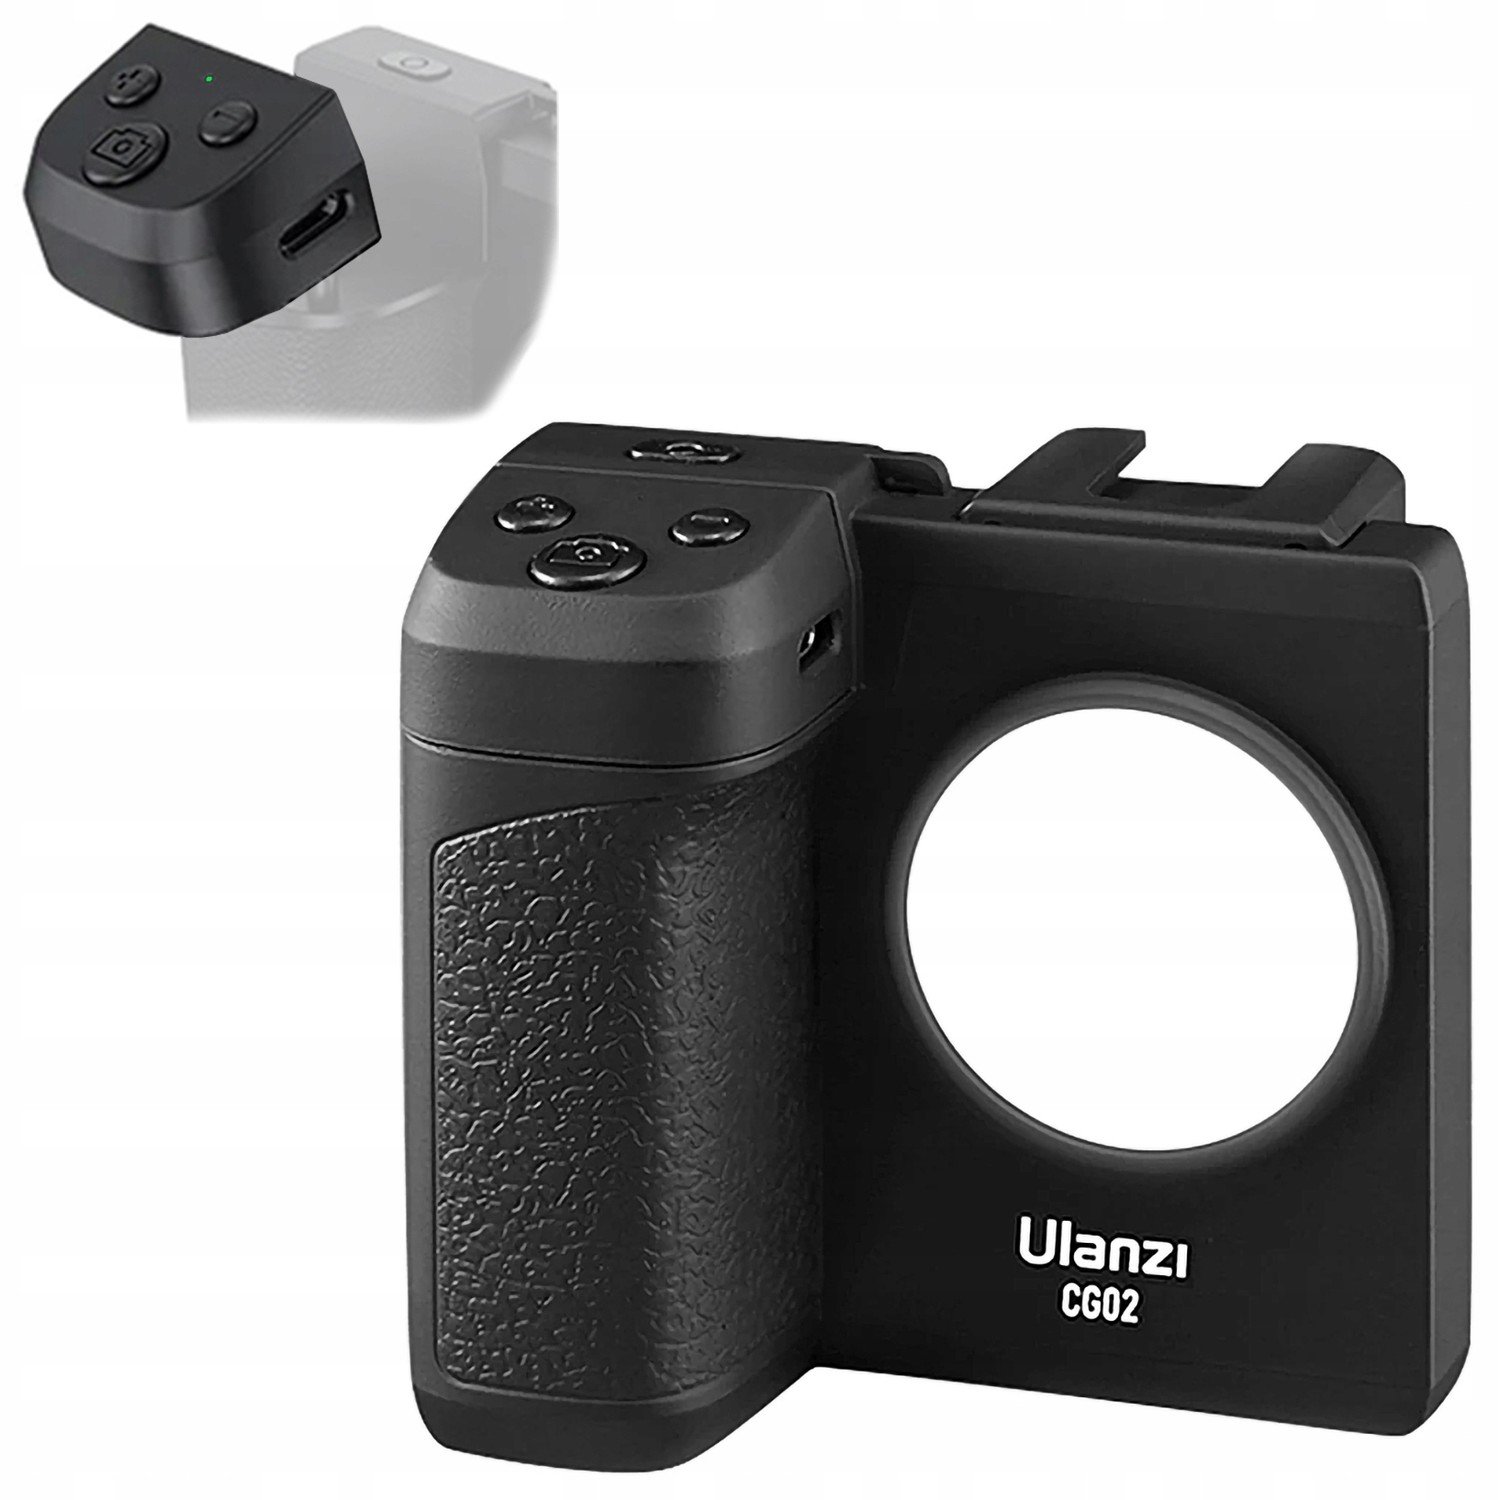 Držák Ulanzi CG02 s Led osvětlením a Bluetooth dálkovým ovládáním pro telefon